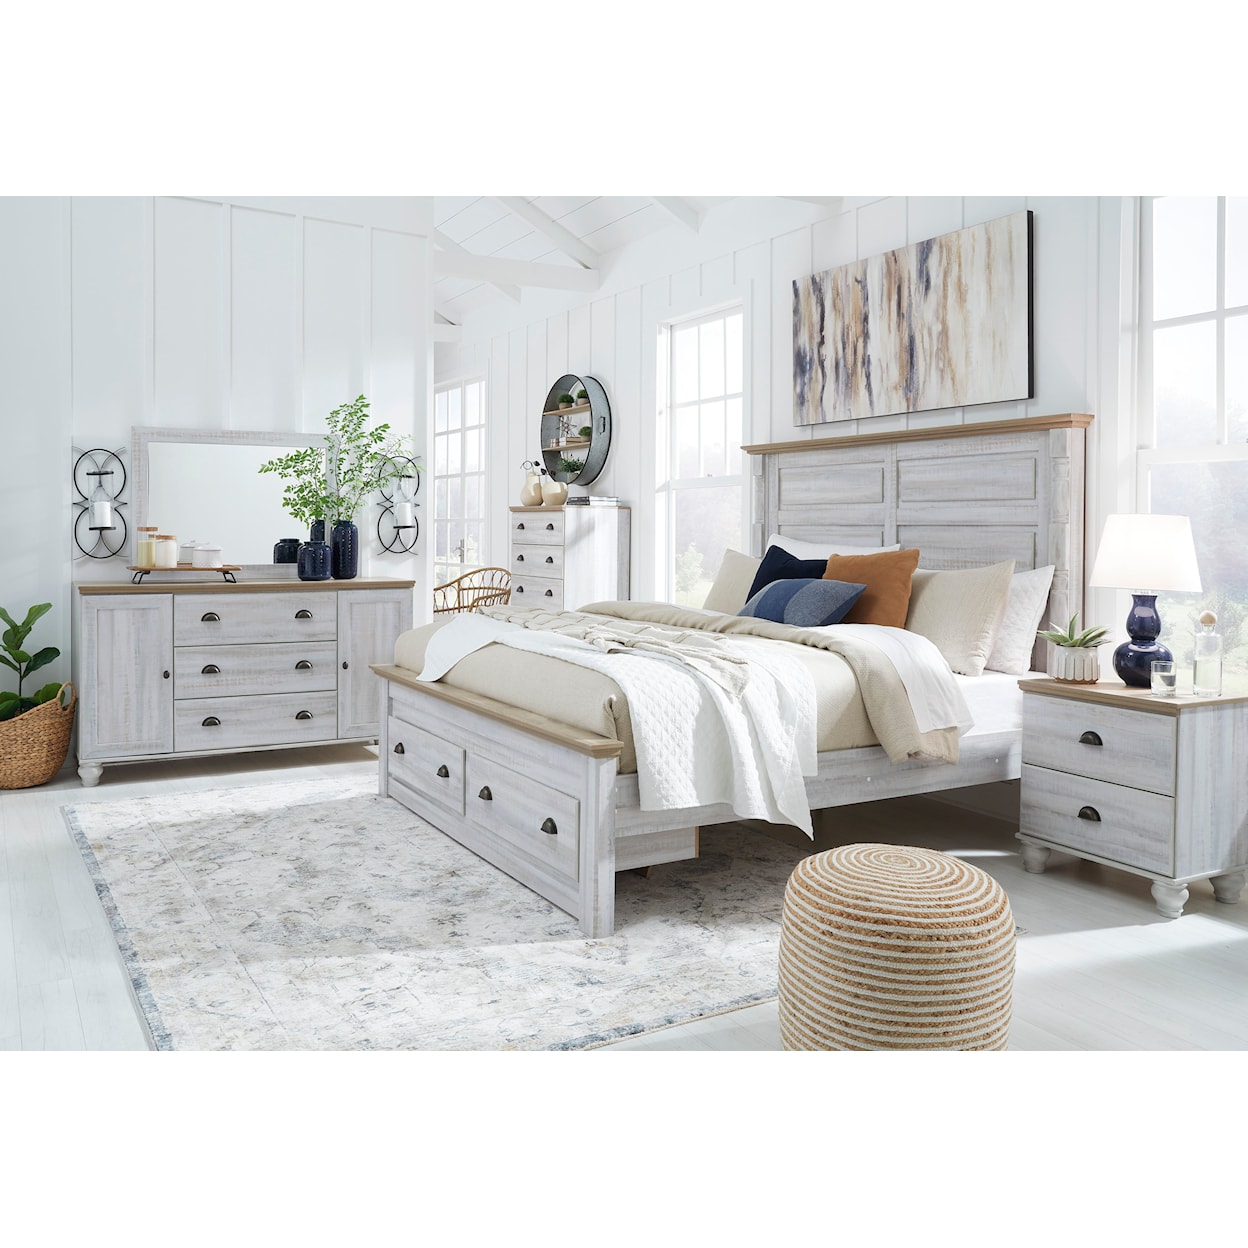 Ashley Furniture Signature Design Haven Bay King Bedroom Set